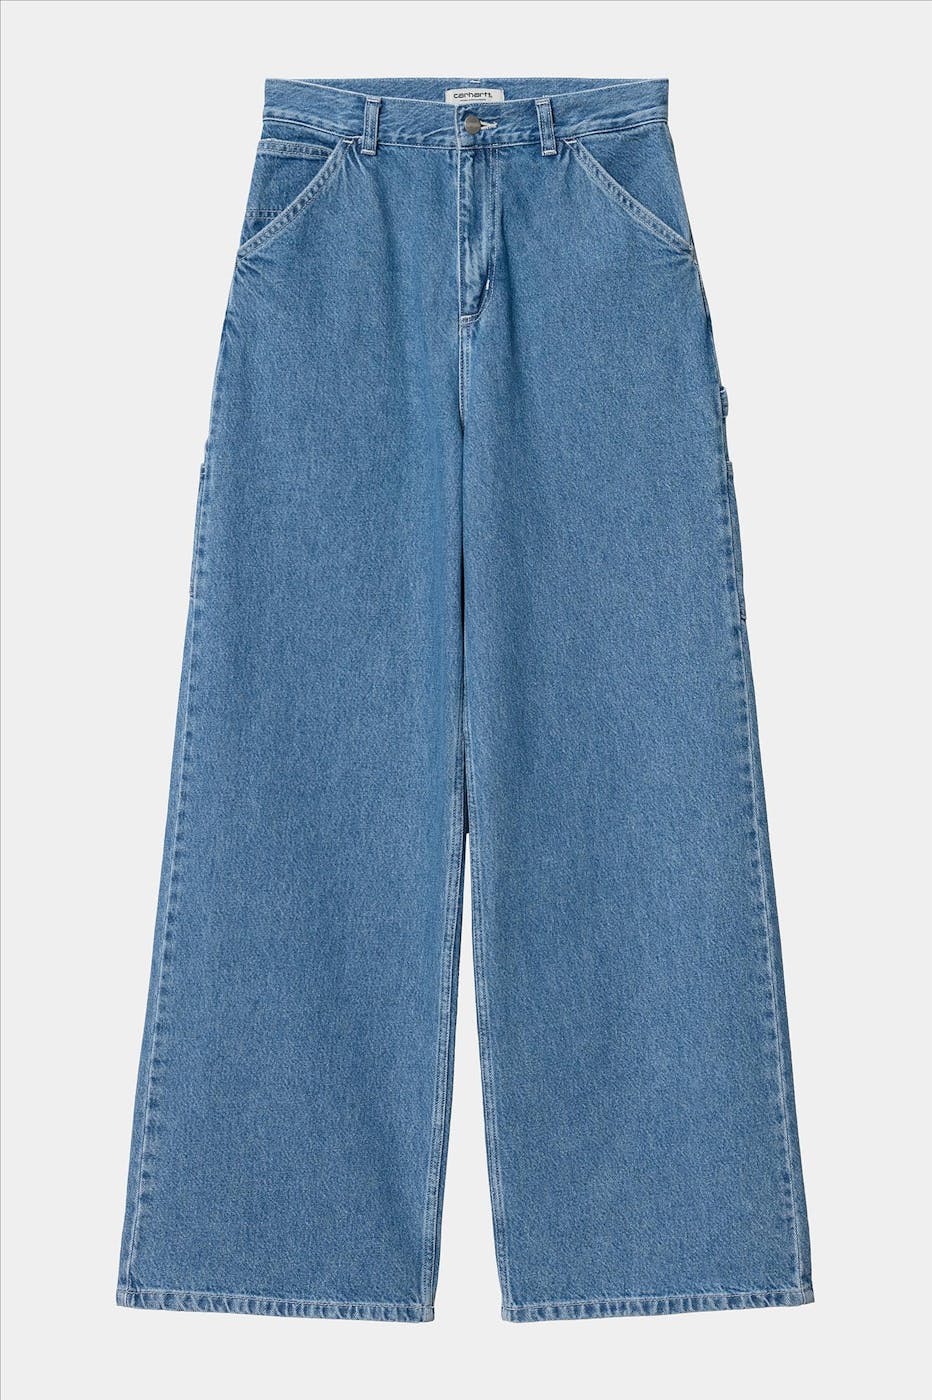 Carhartt WIP - Blauwe Jens jeans